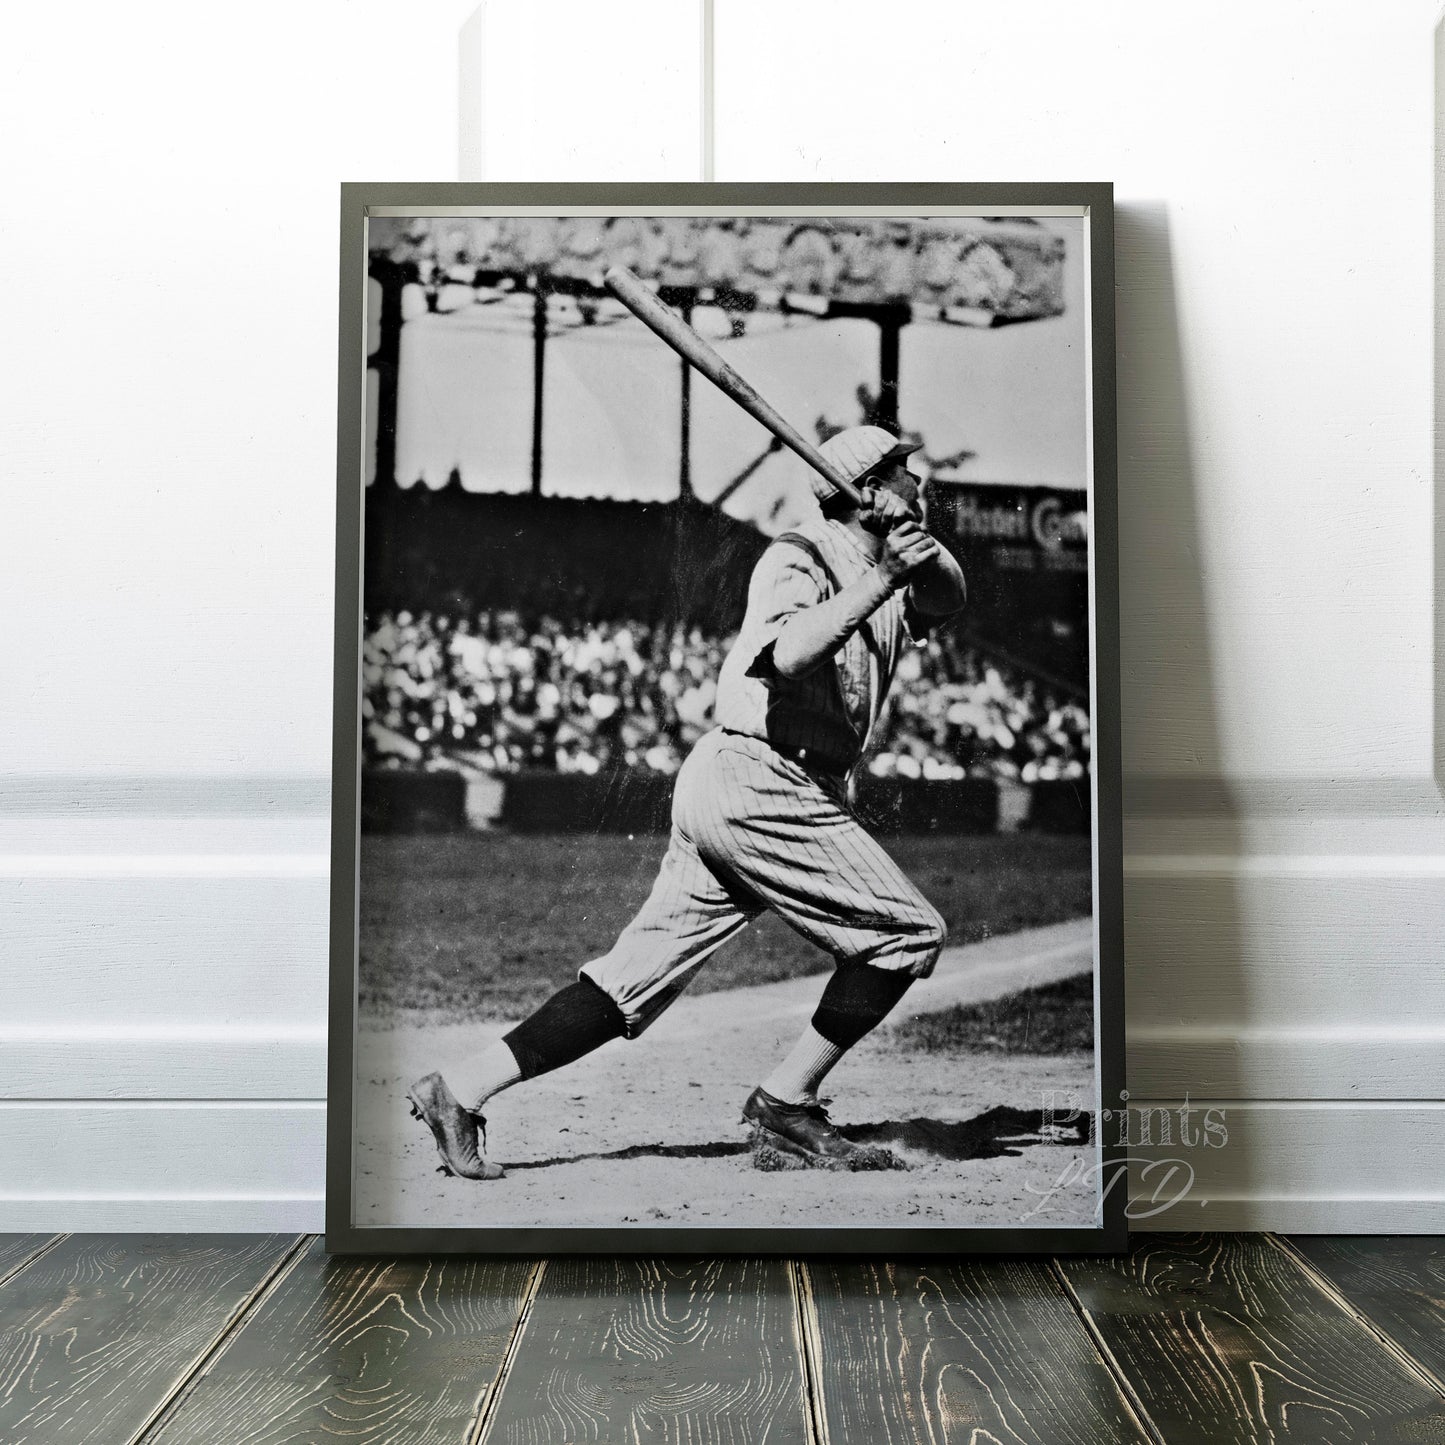 Babe Ruth home run, 1922